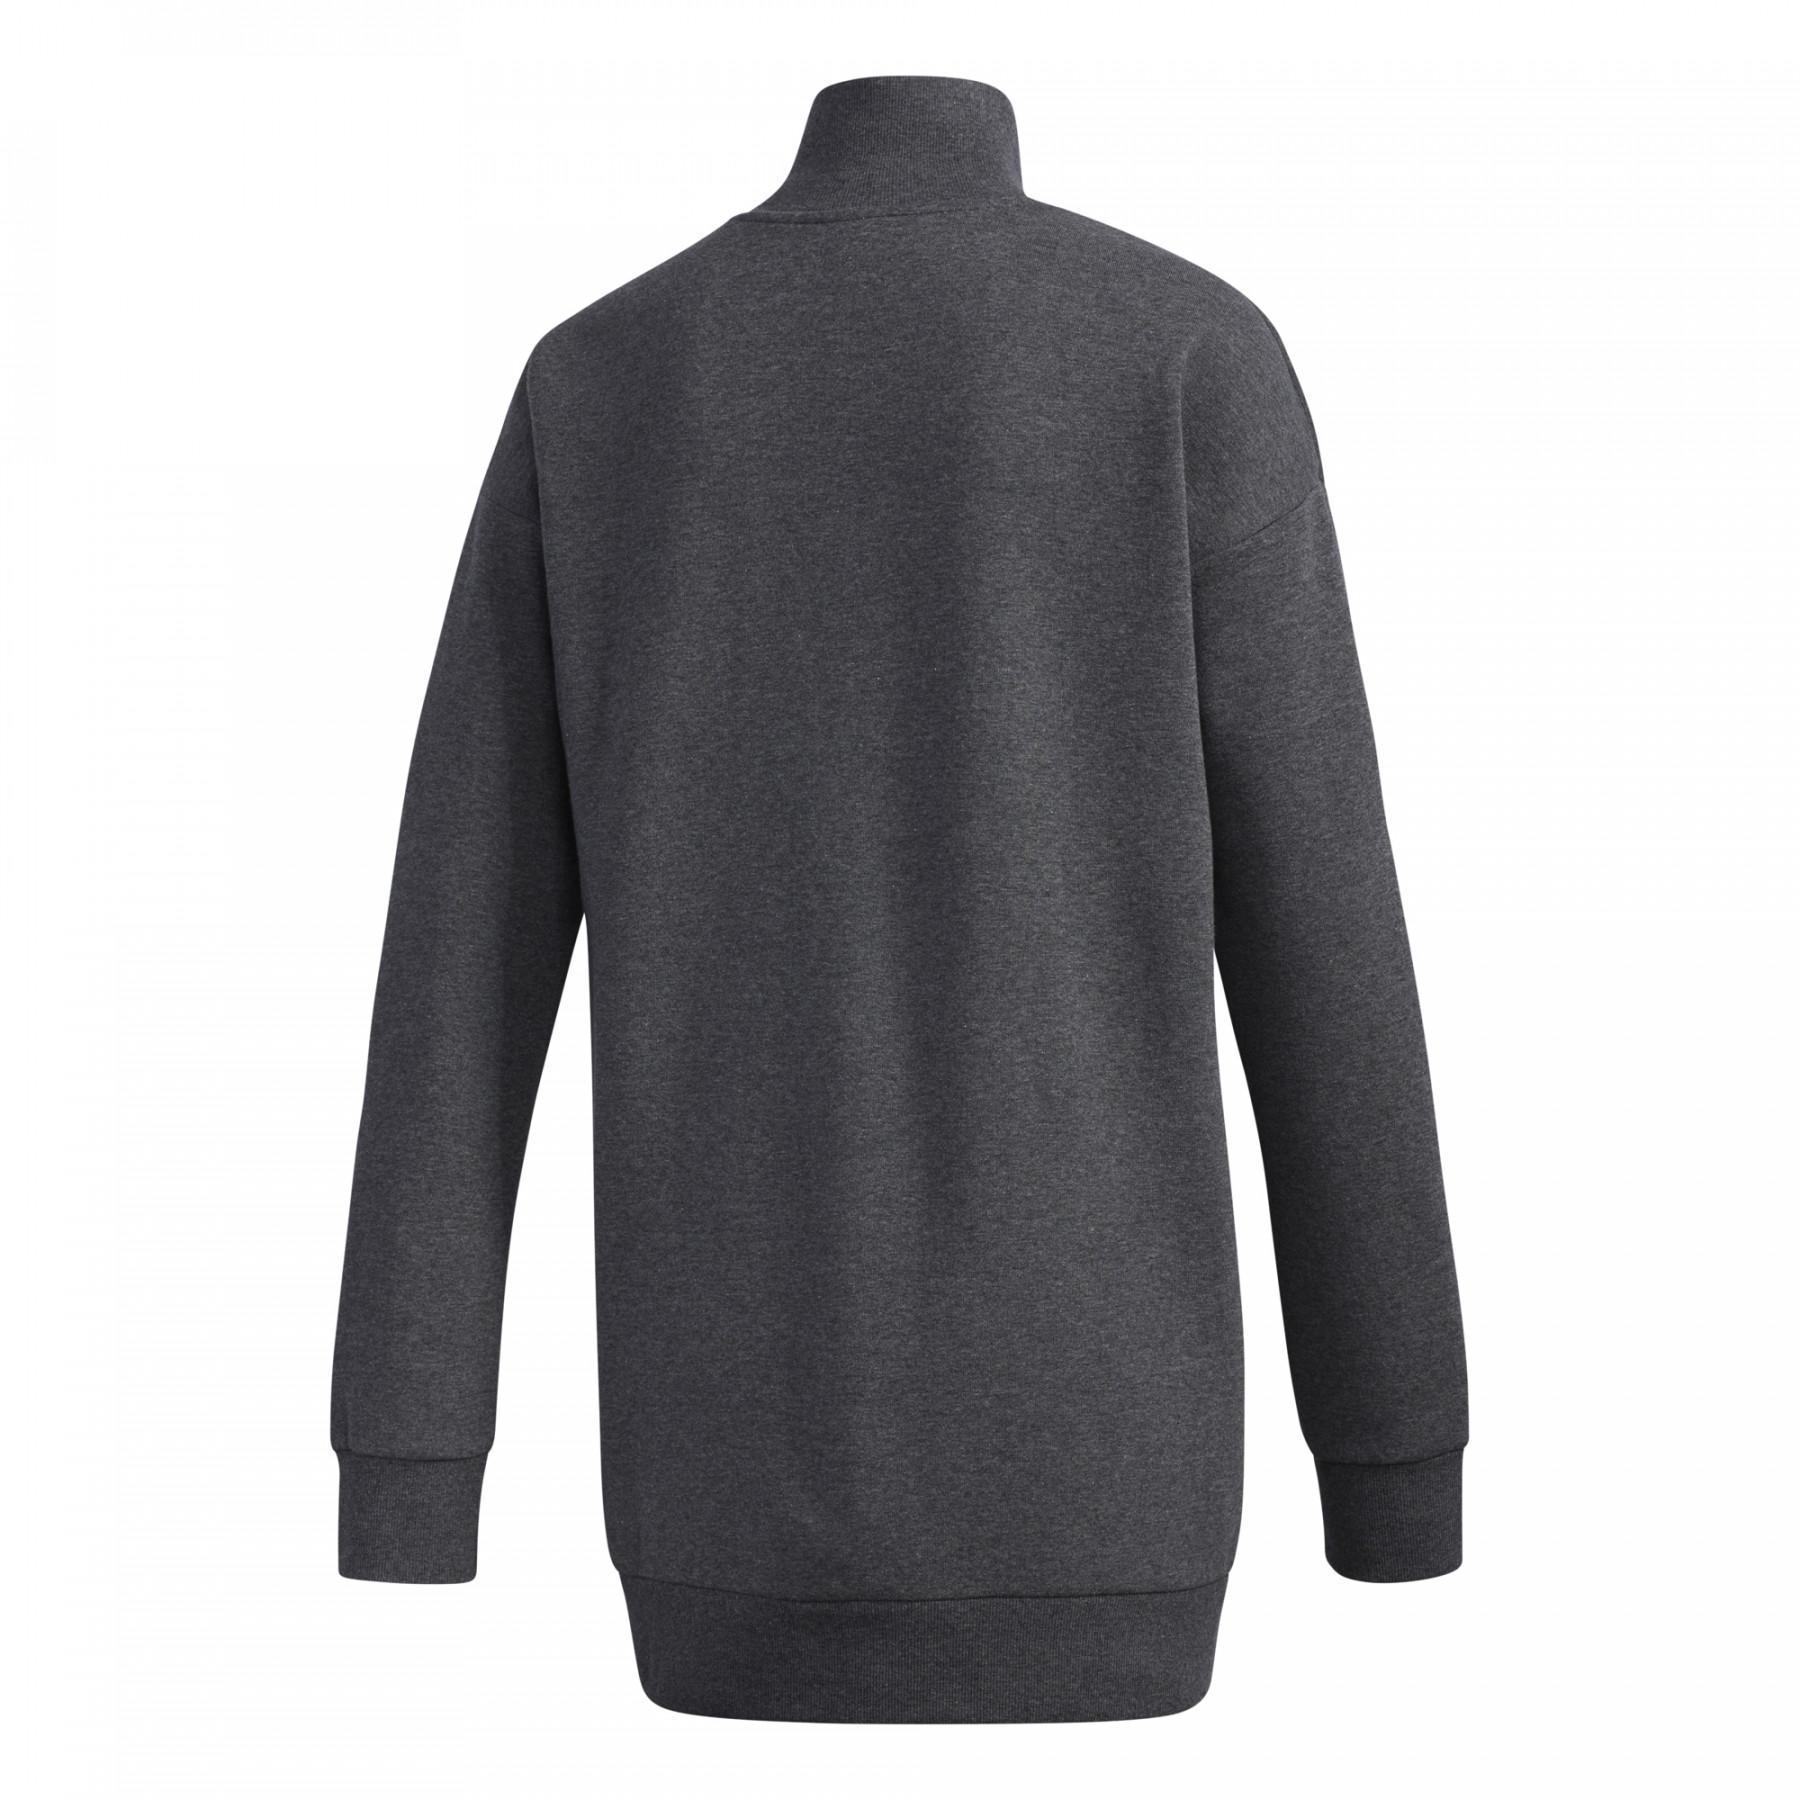 Sweatshirt med halv dragkedja för kvinnor adidas Essentials Comfort Elongated